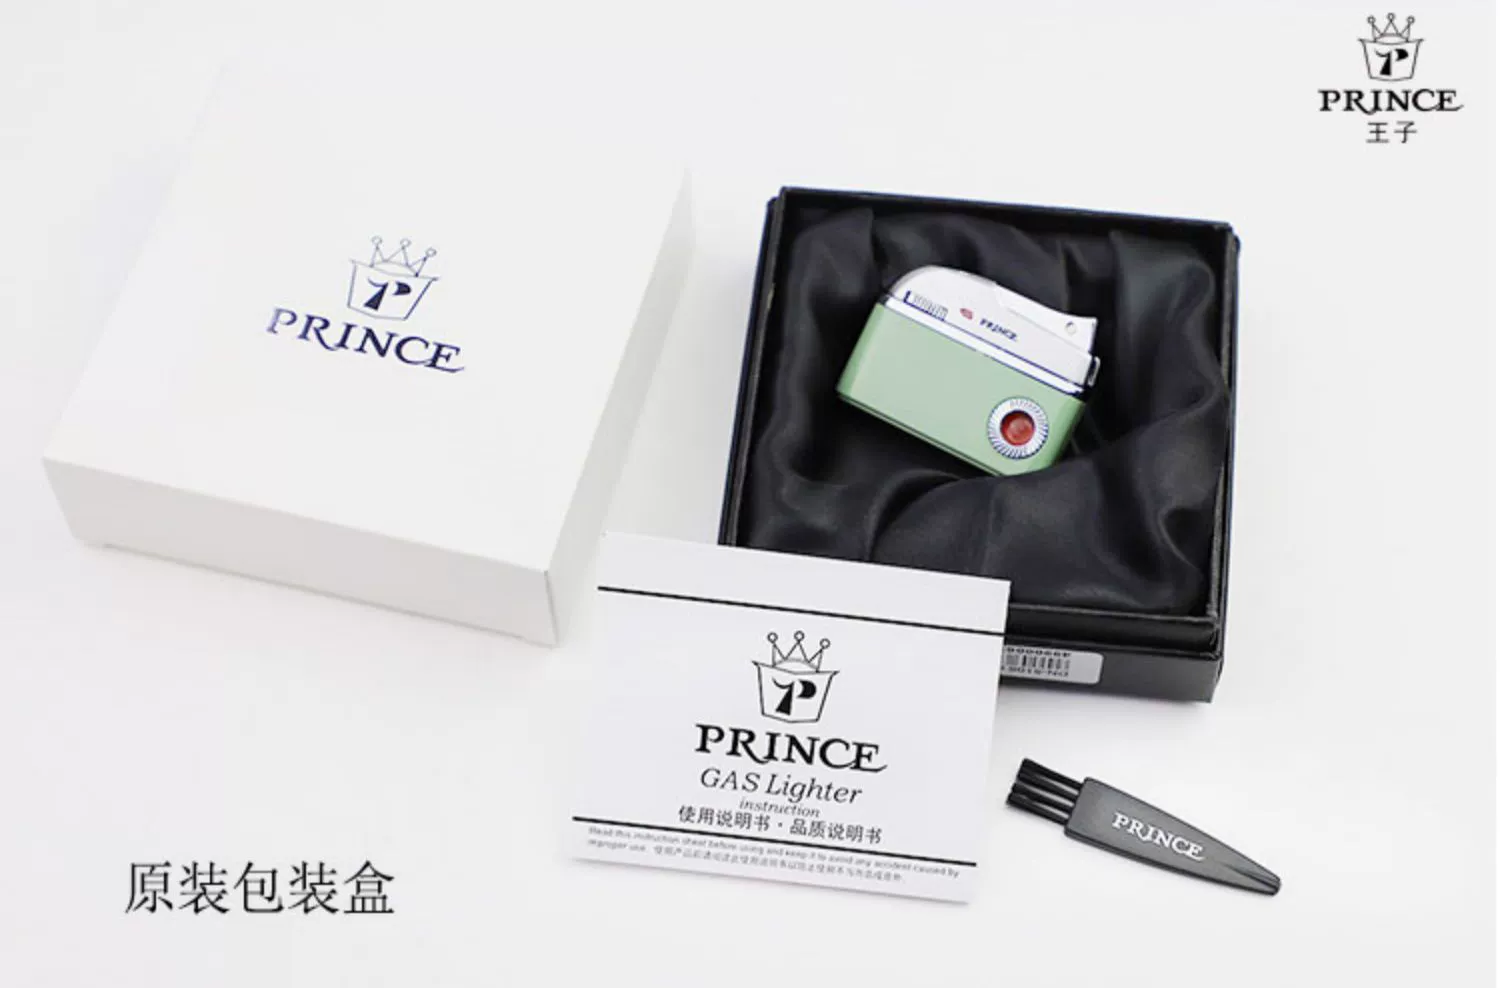 فندک گازی برند Prince مدل Dolphin محصول ژاپن